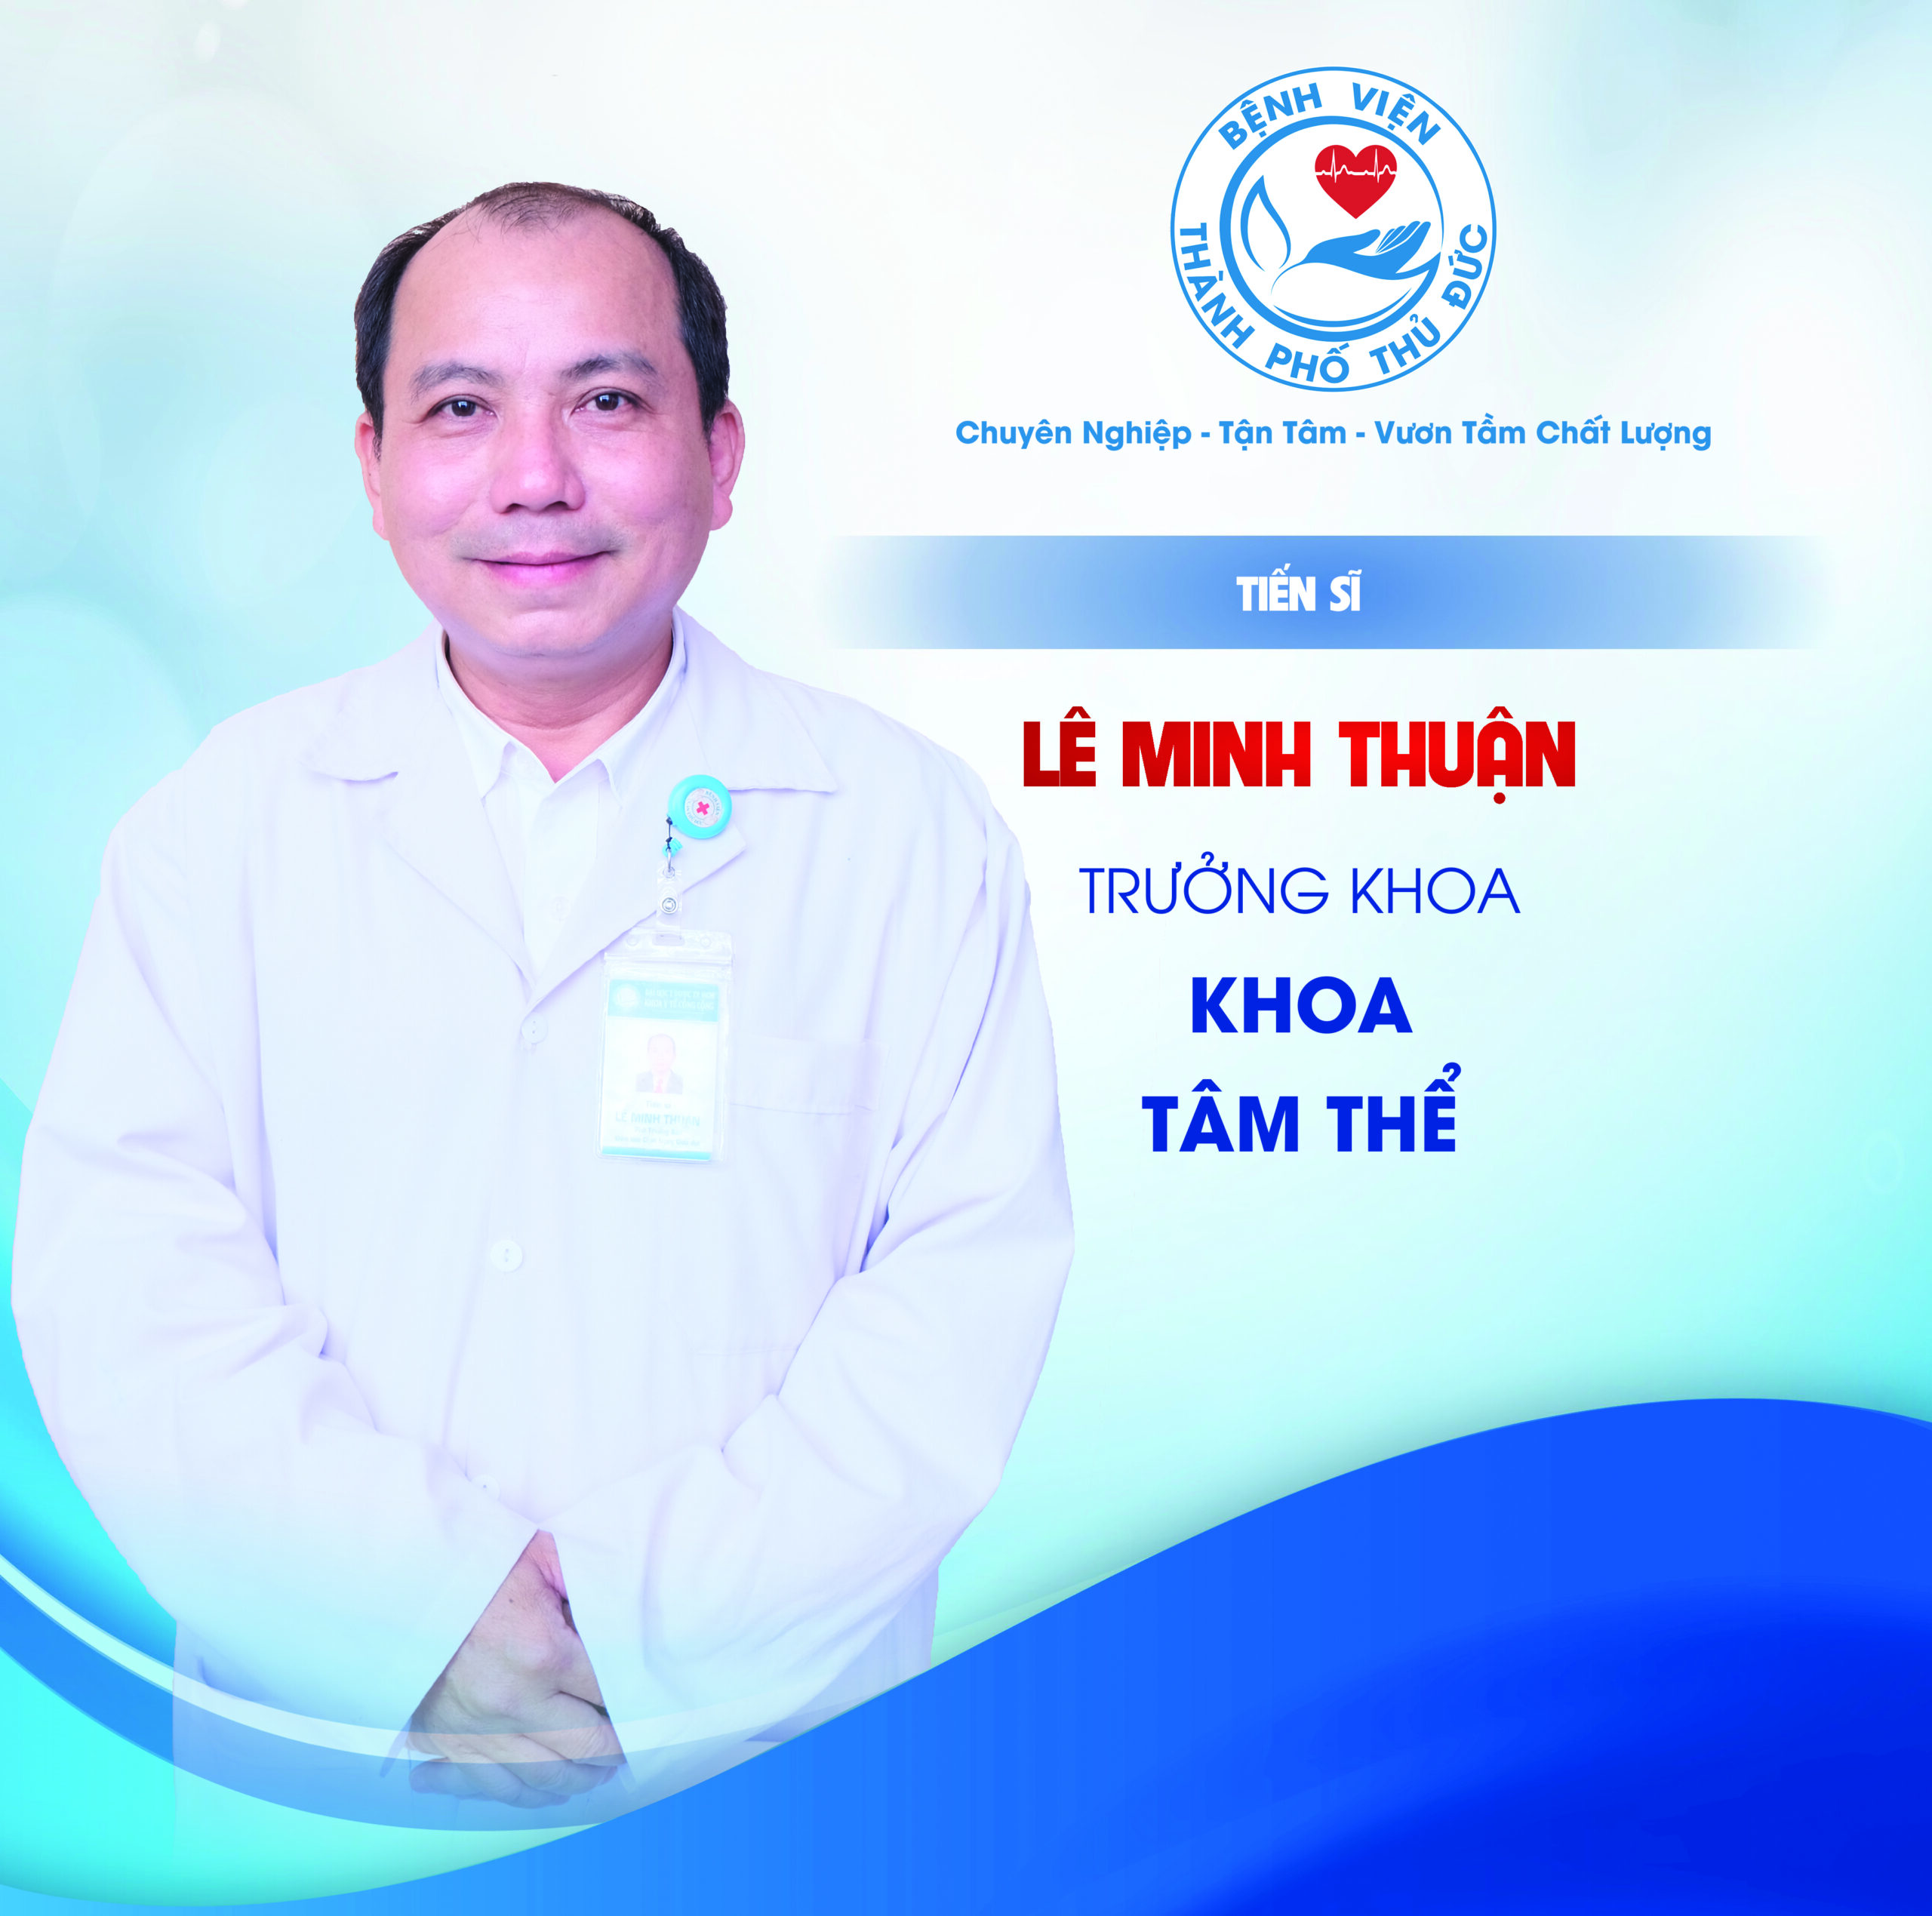 TS. Lê Minh Thuận - Trưởng khoa Tâm thể